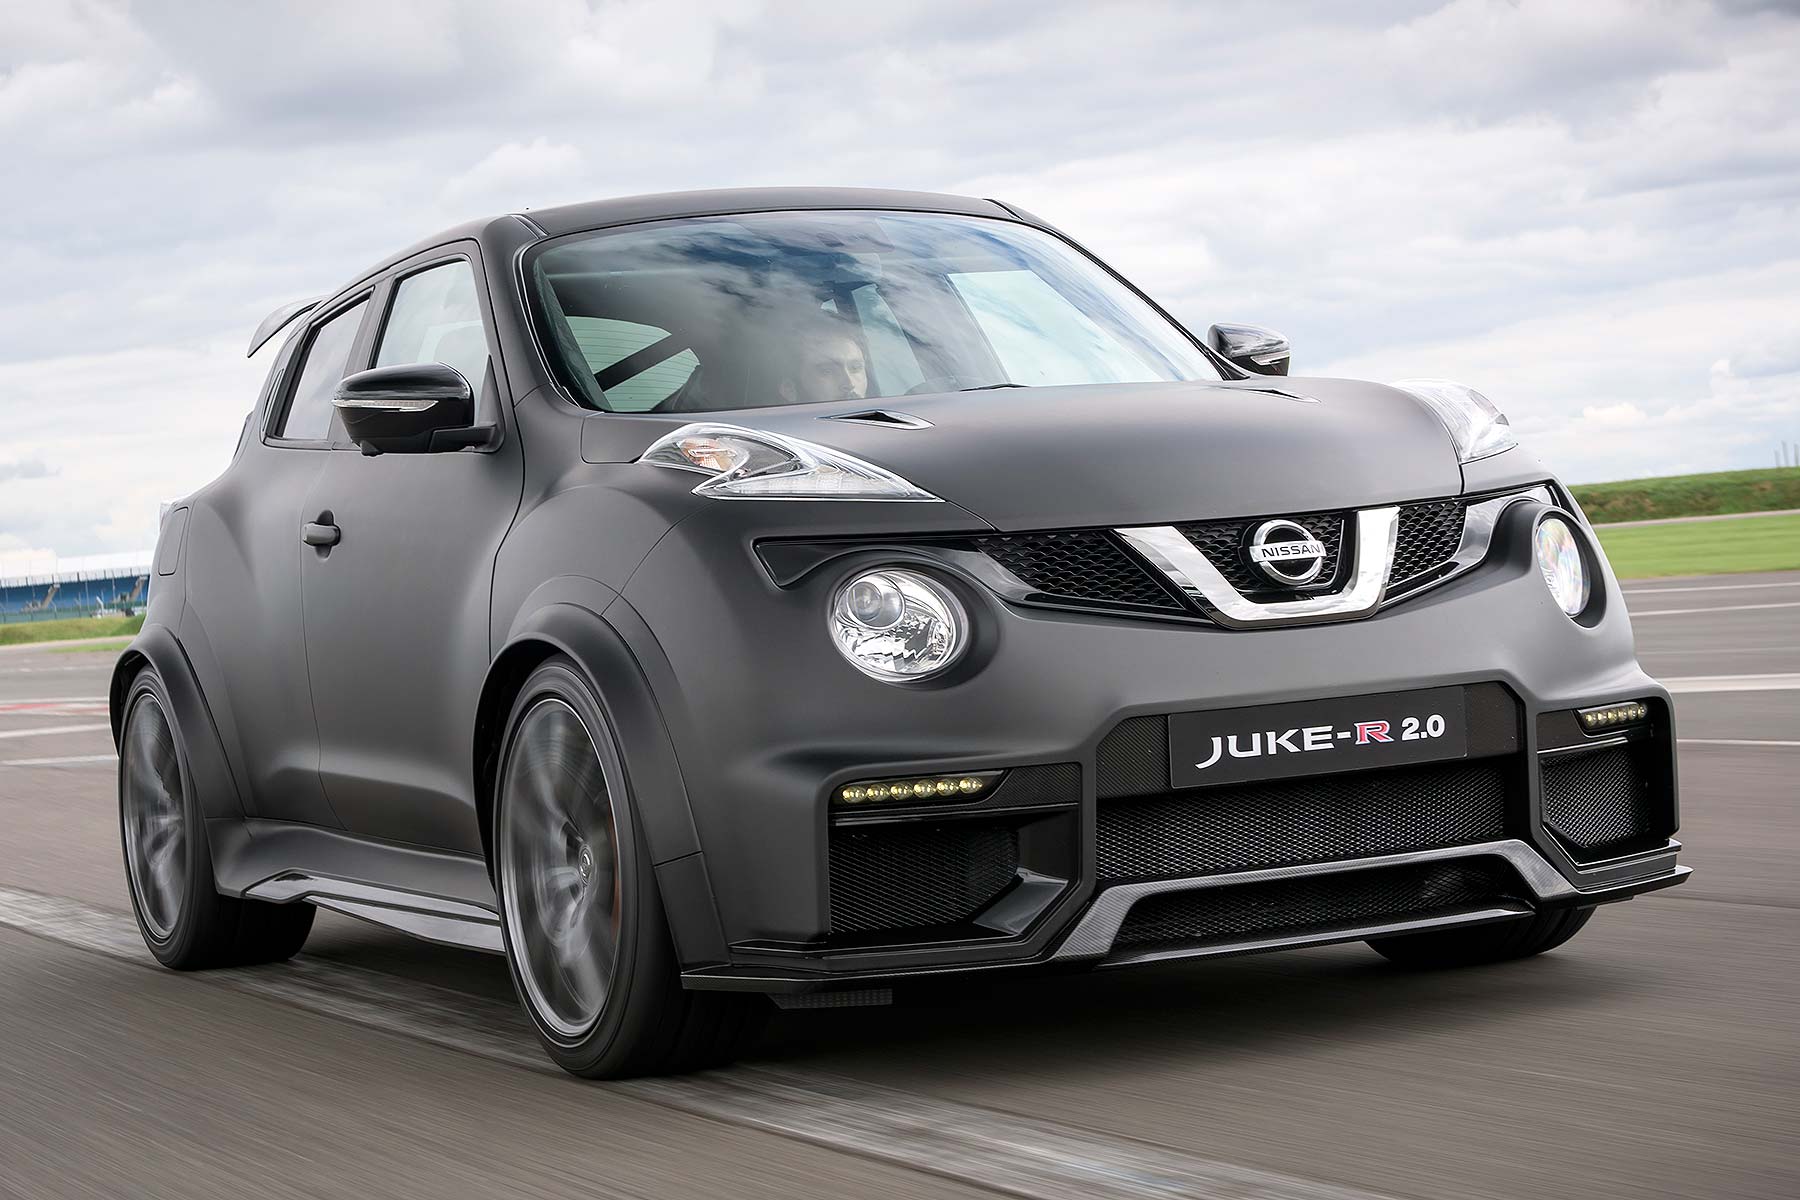 Tải hình ảnh xe Nissan Juke chất lượng cao 2